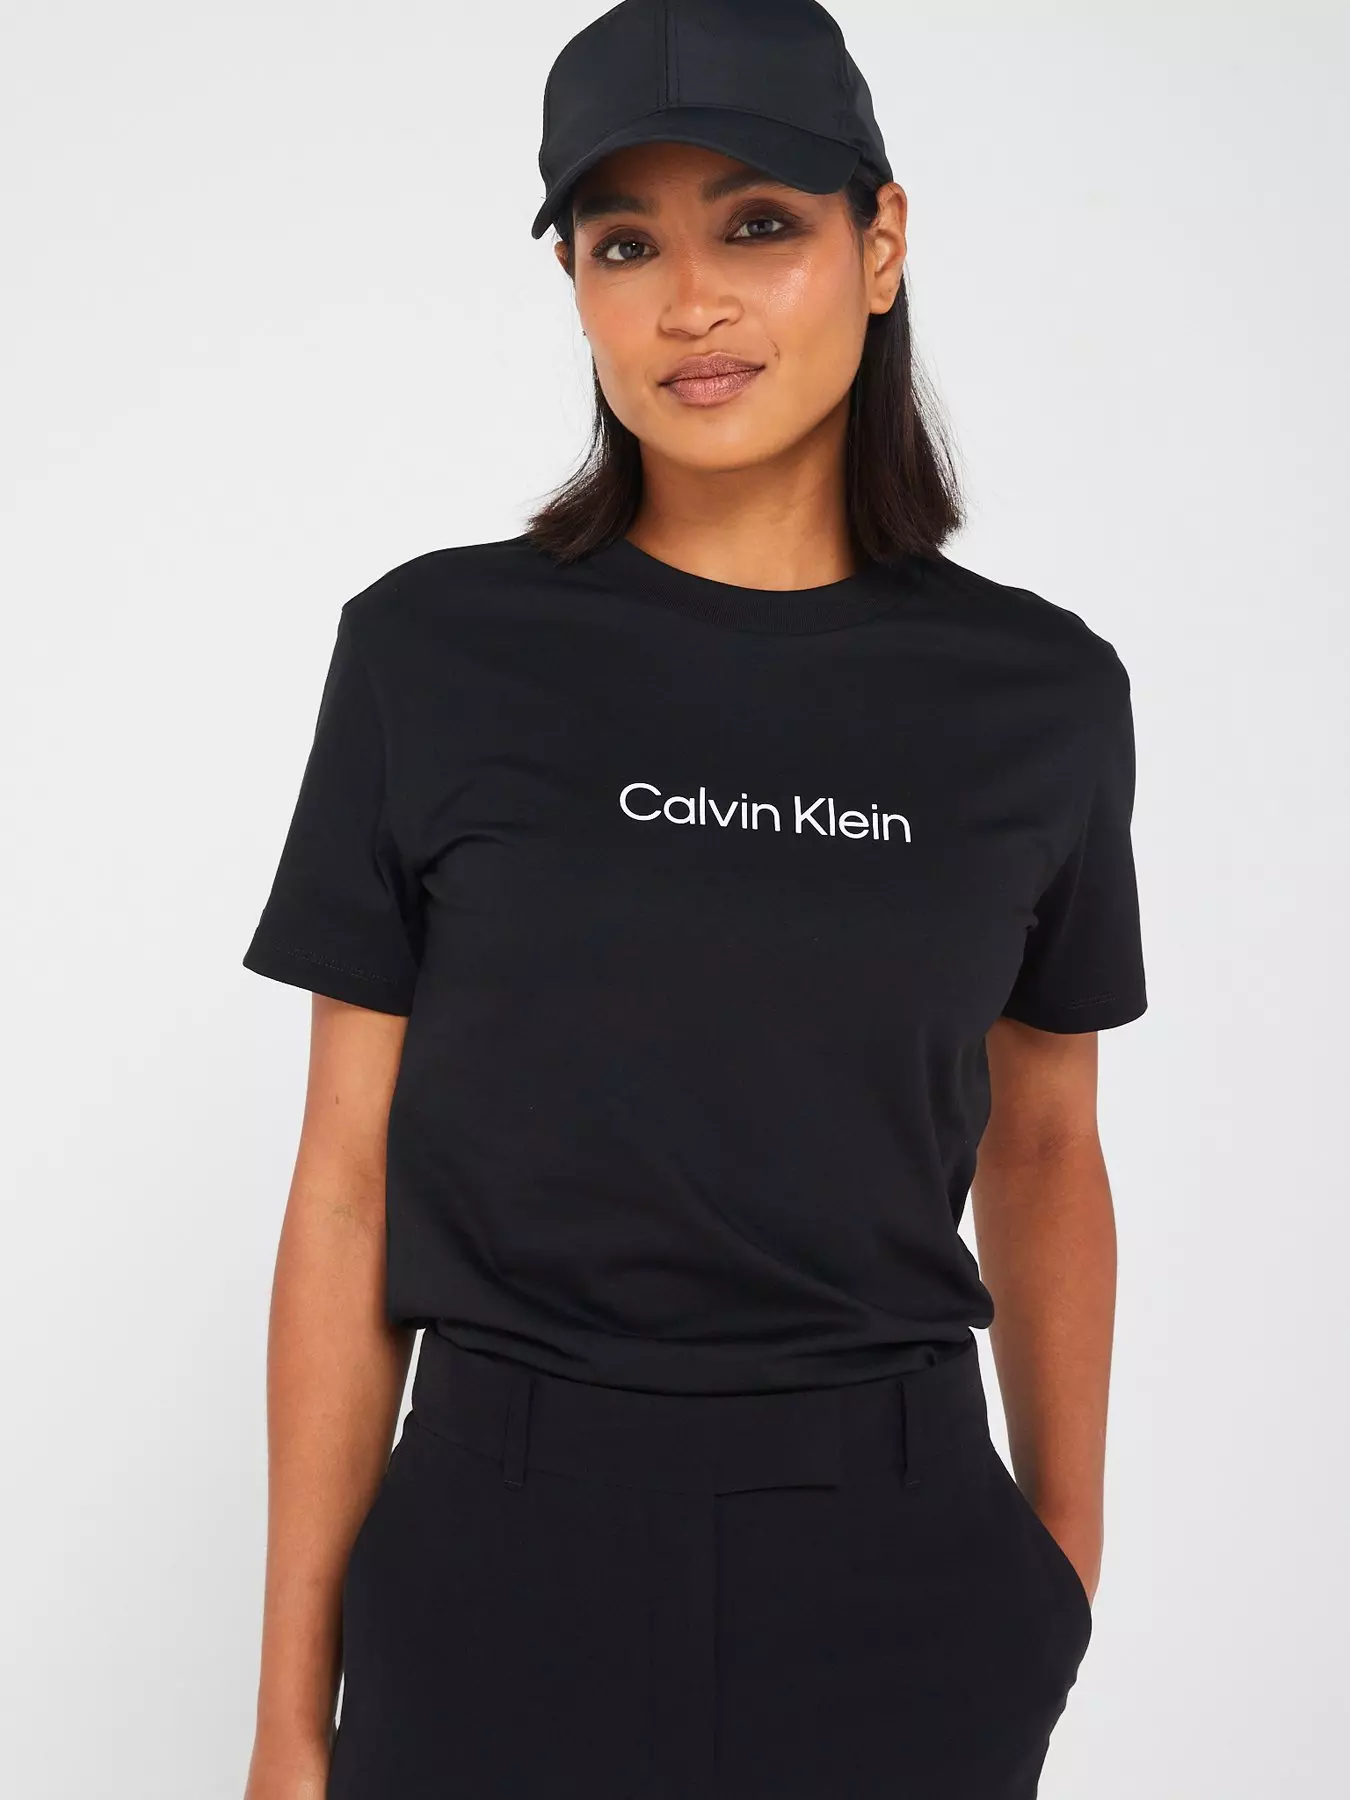 Calvin klein | & t-shirts | Tops Women